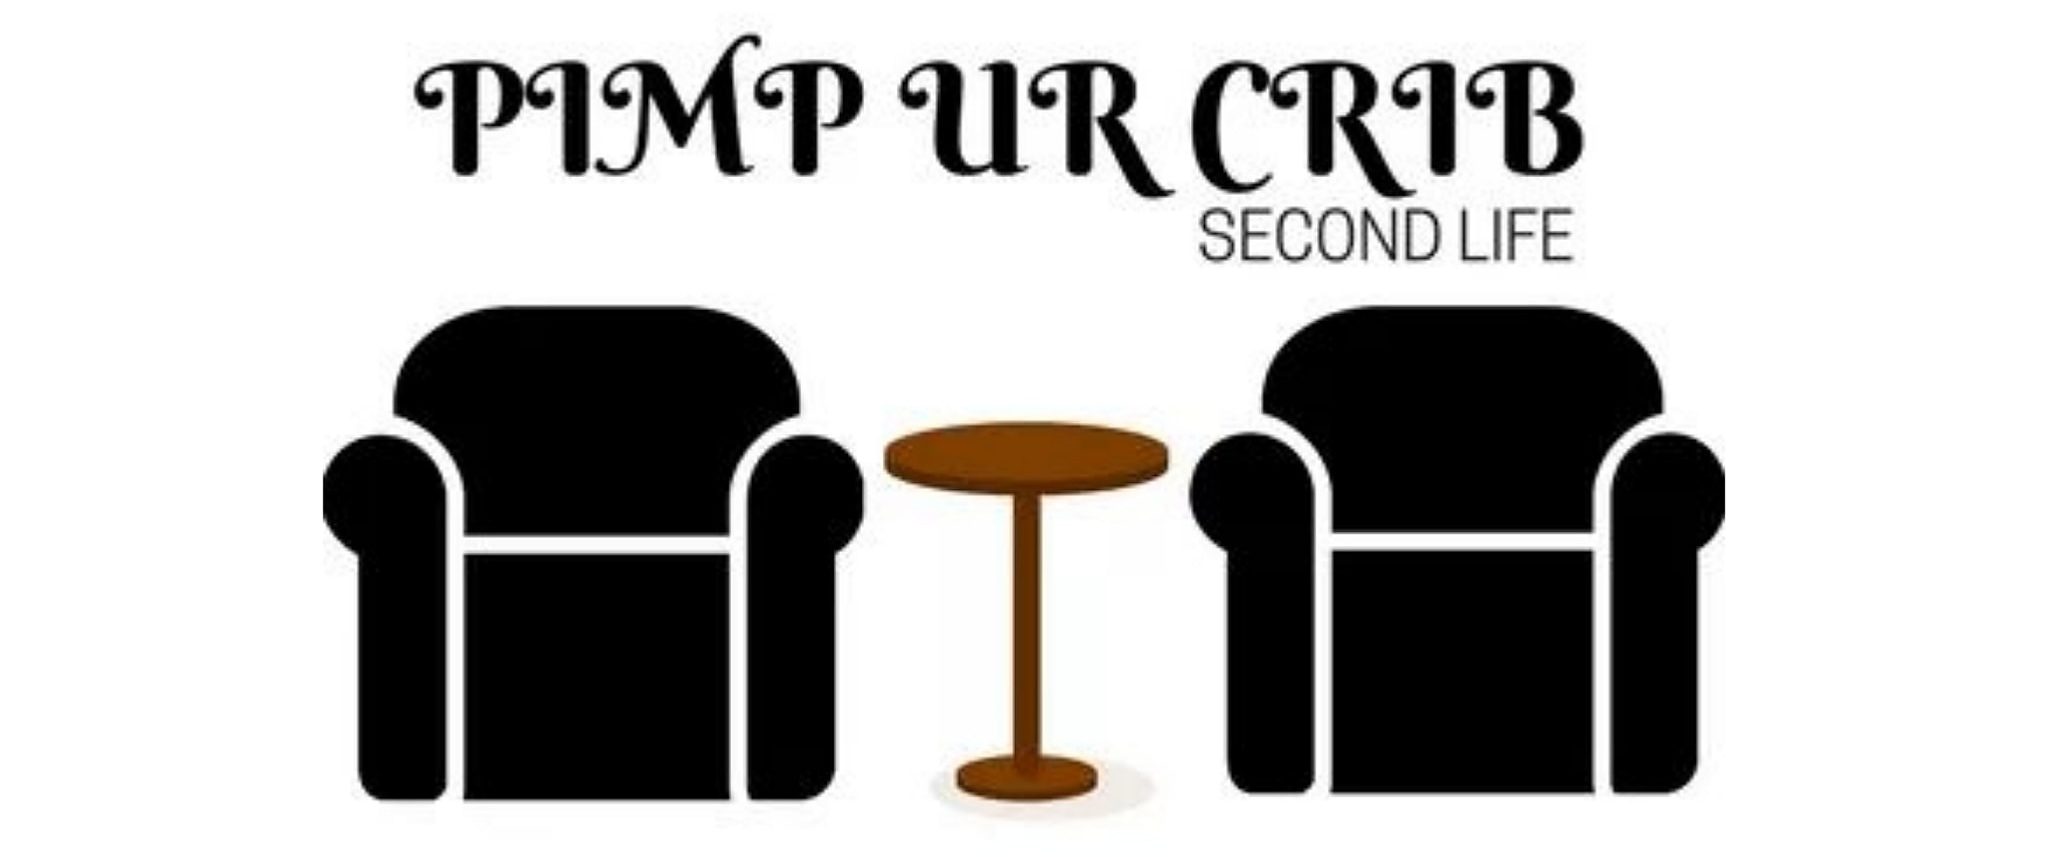 Pimp Ur Crib – Second Life